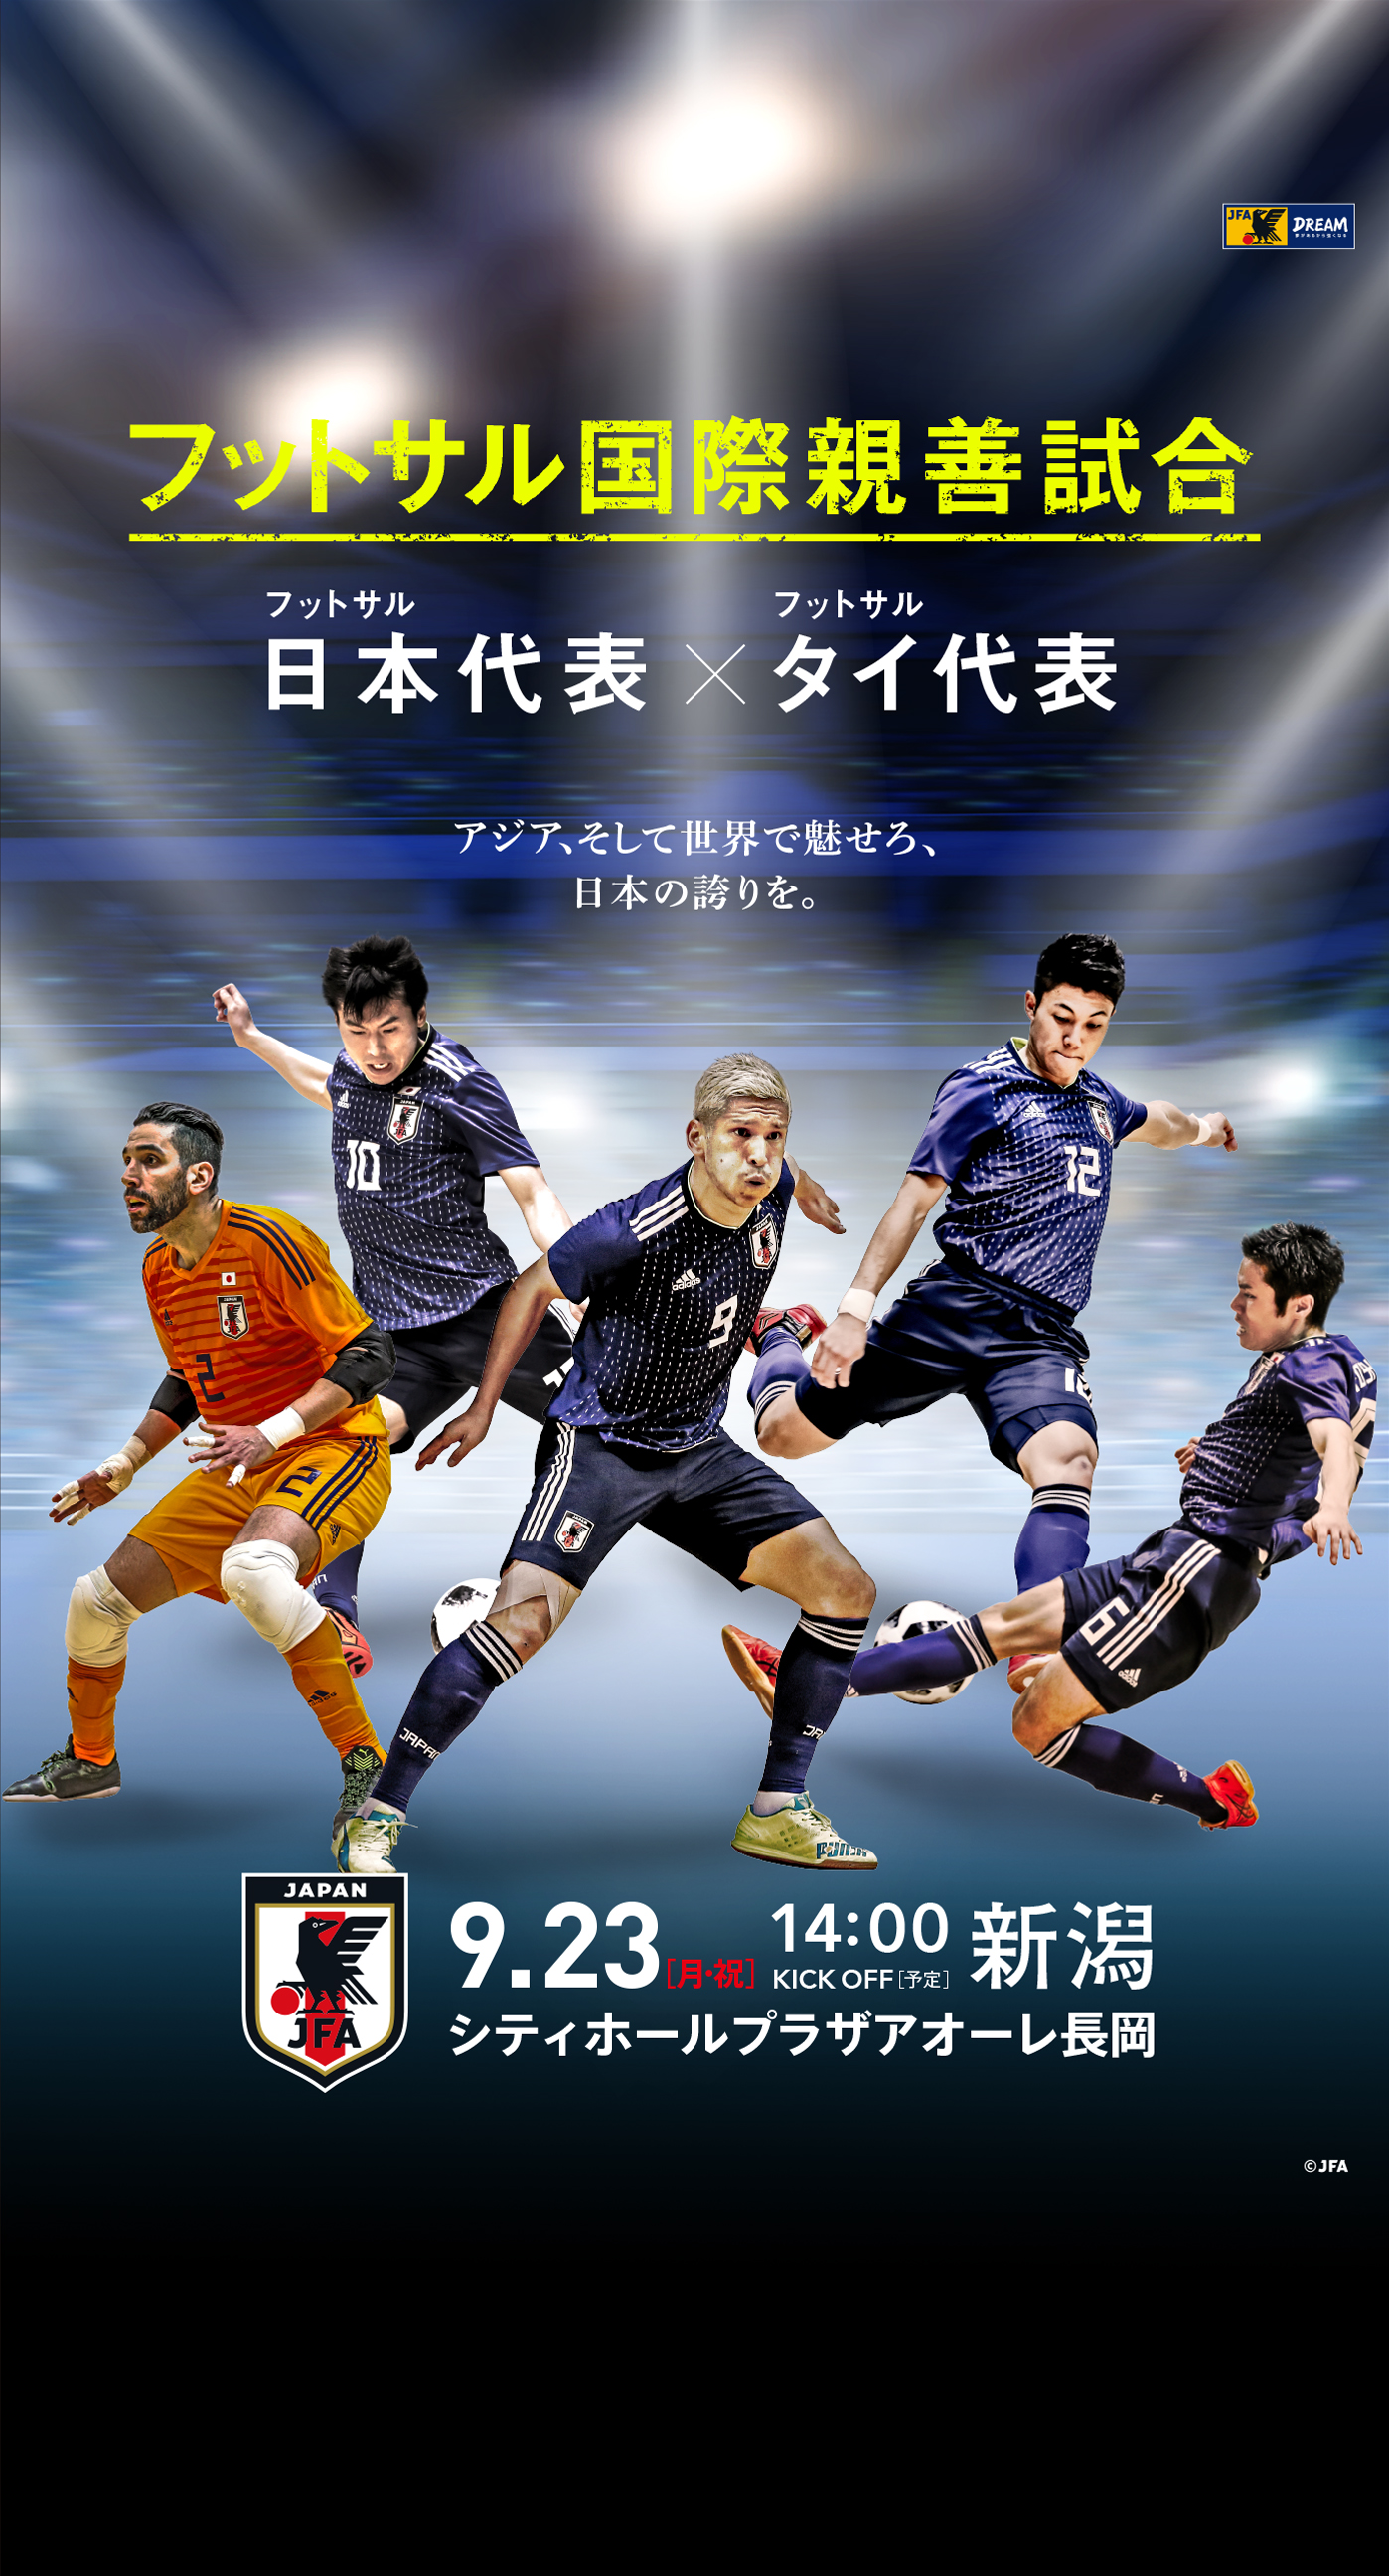 壁紙ダウンロード 国際親善試合 フットサル 日本代表 Jfa 日本サッカー協会